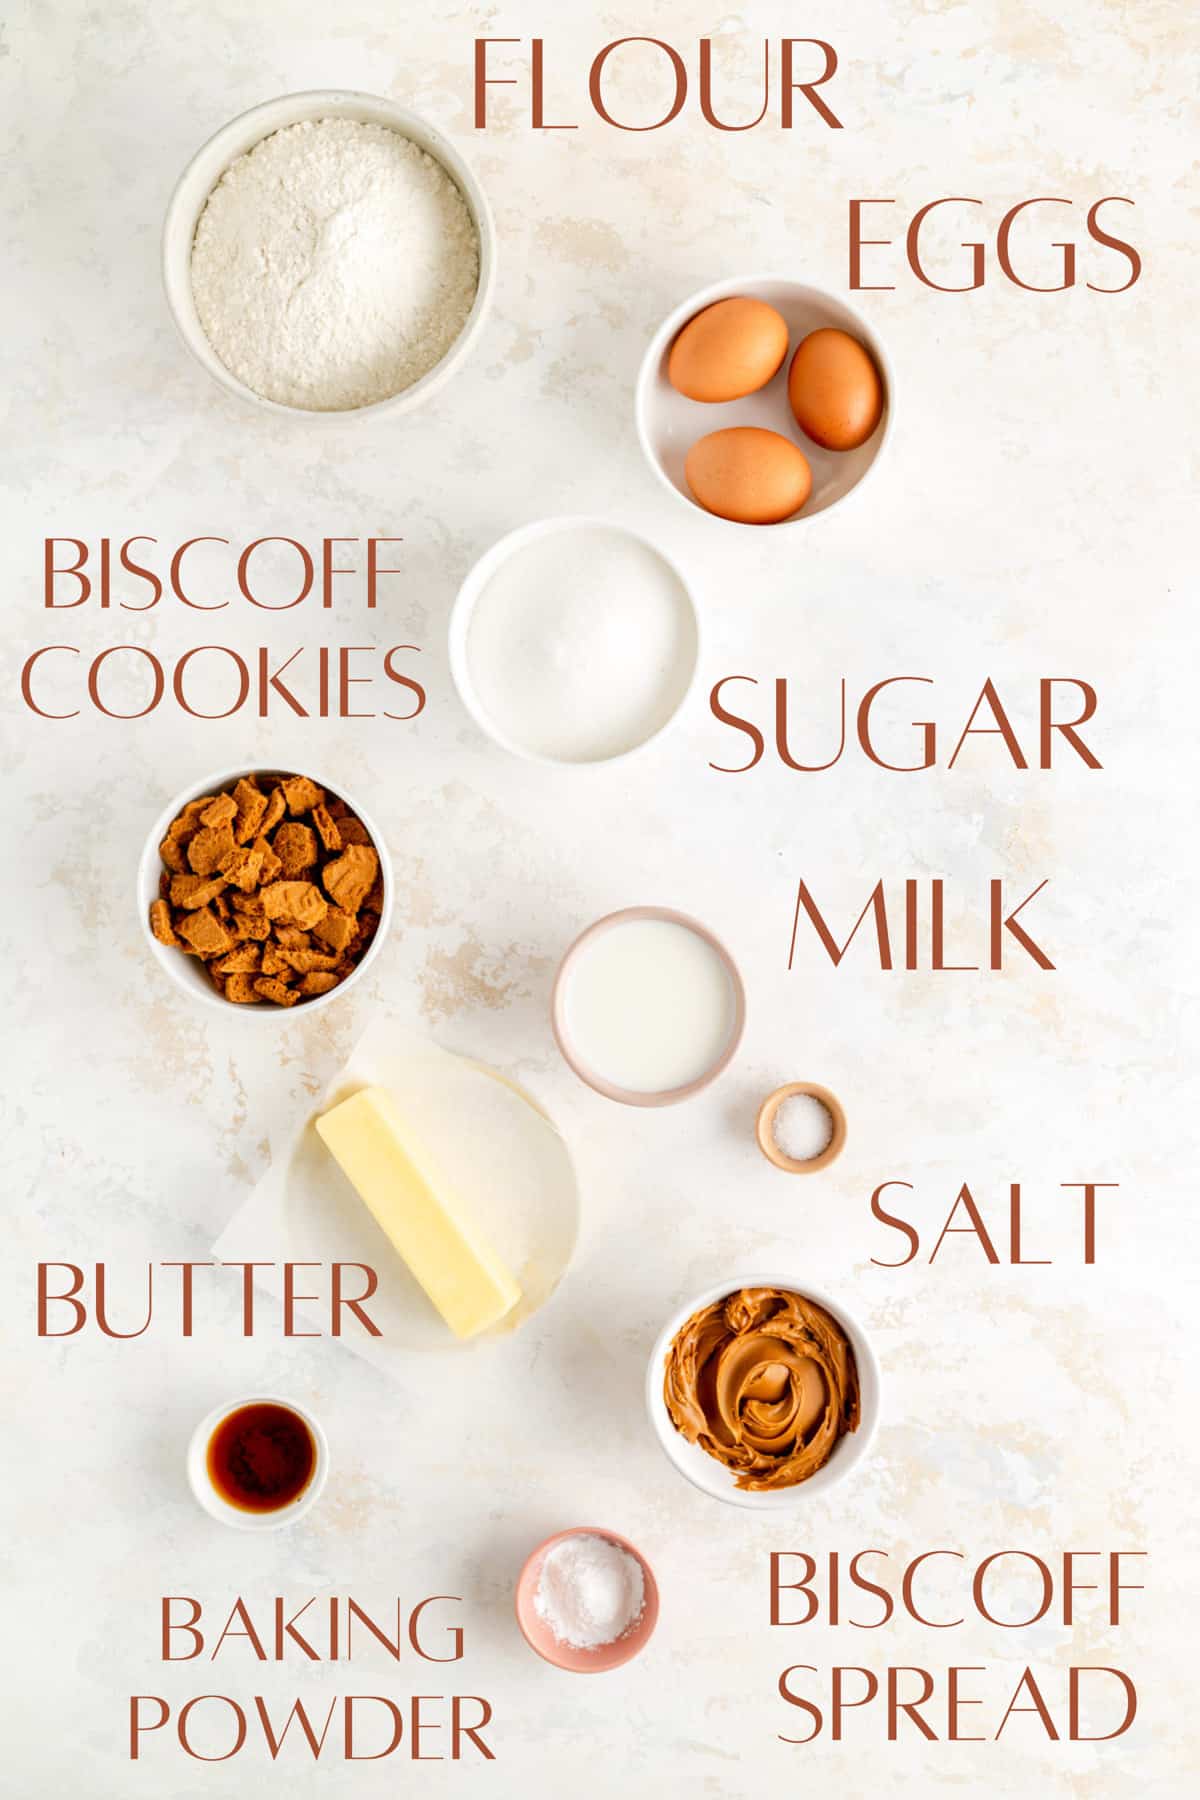 Flour, eggs, Biscoff cookies, sugar, milk, salt, butter, Biscoff spread, and baking powder in separate bowls.